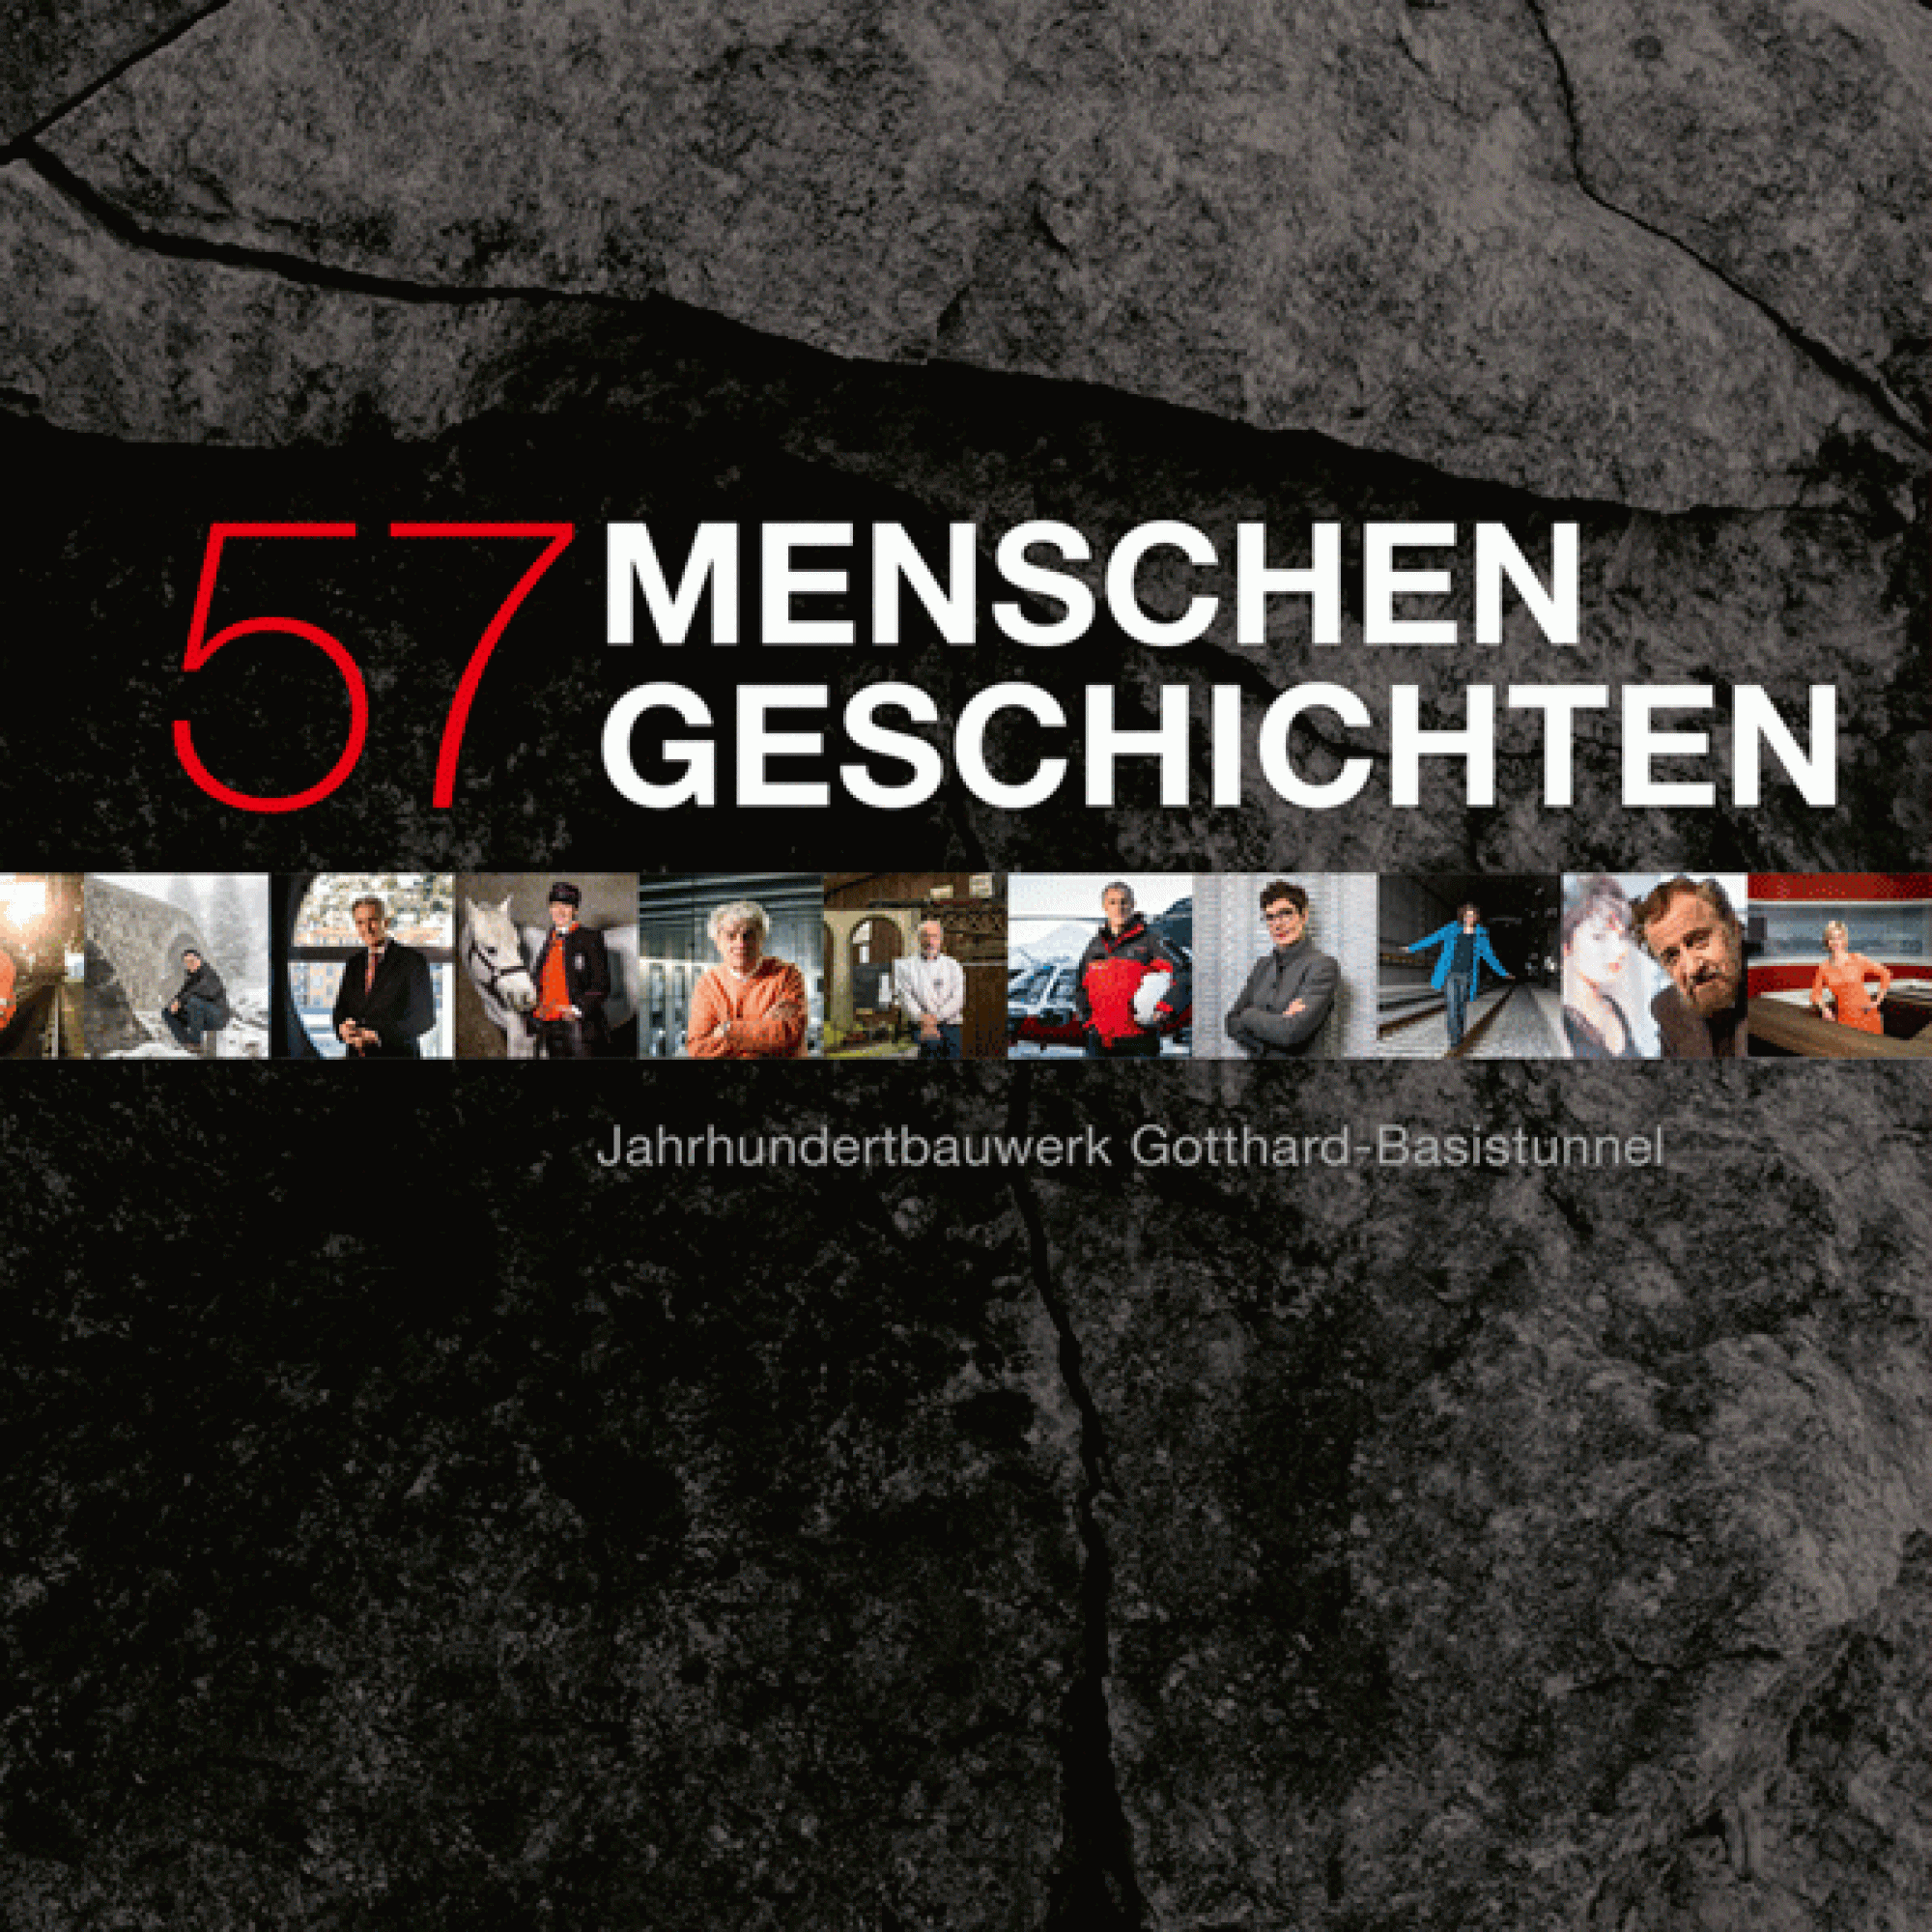 Das Buch zur Eröffnung des Gotthard-Basistunnels, bei dem Menschen im Mittelpunkt stehen. (Bild: PD)